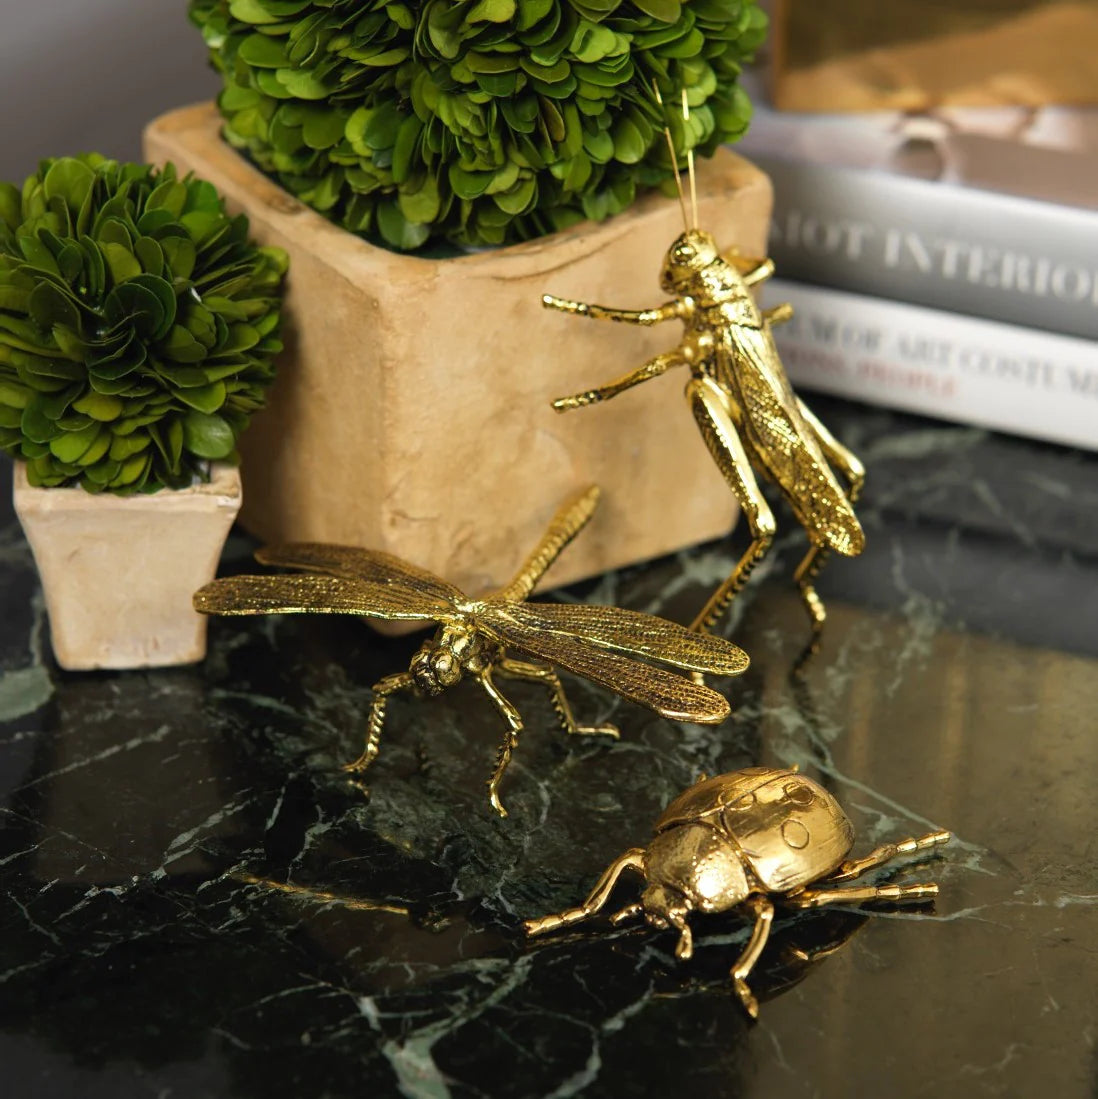 Decorative Gold Ladybug